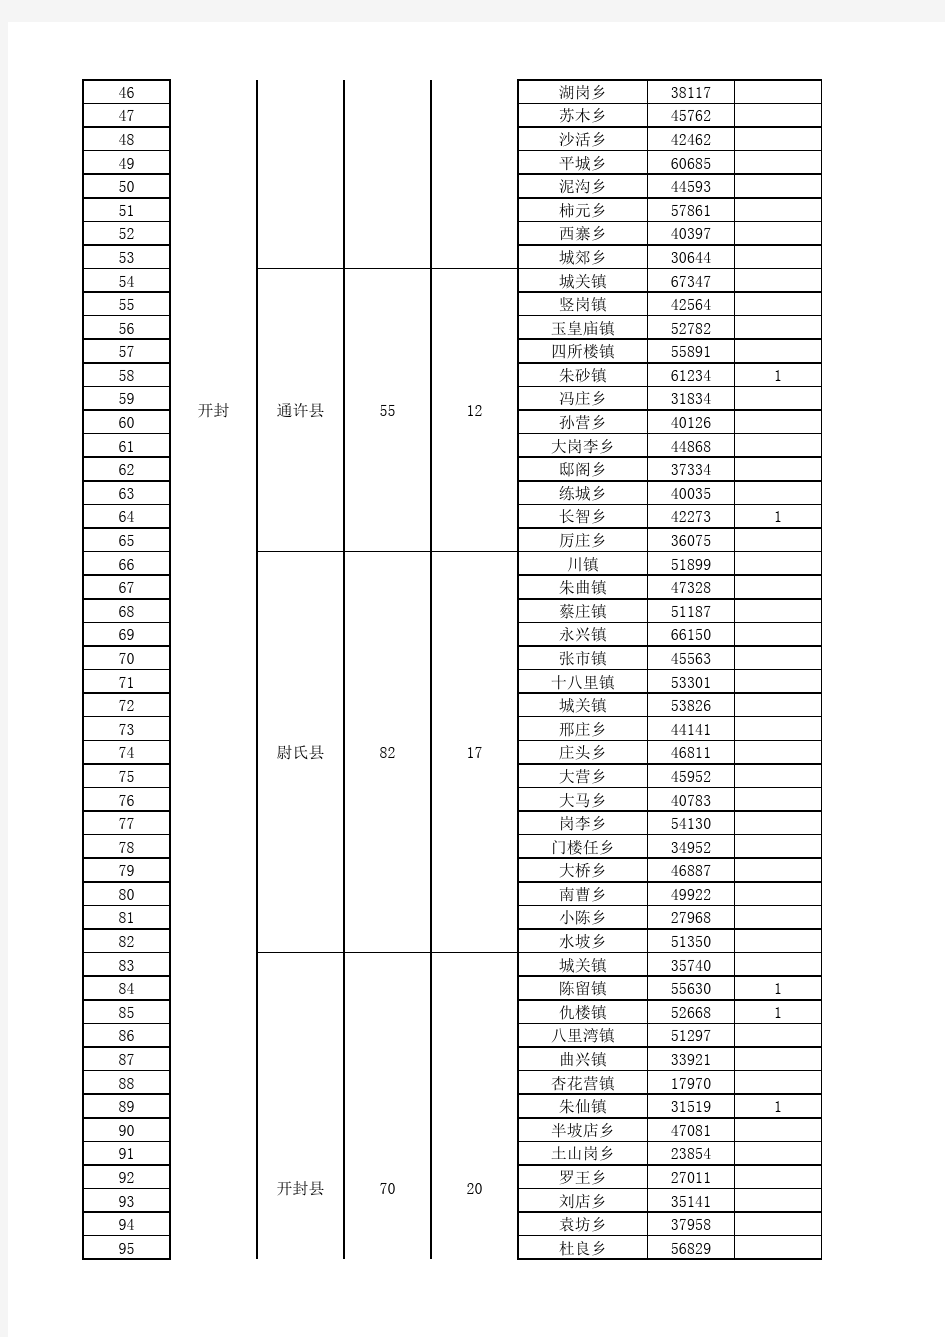 河南省行政市县乡划分及人口情况一览表